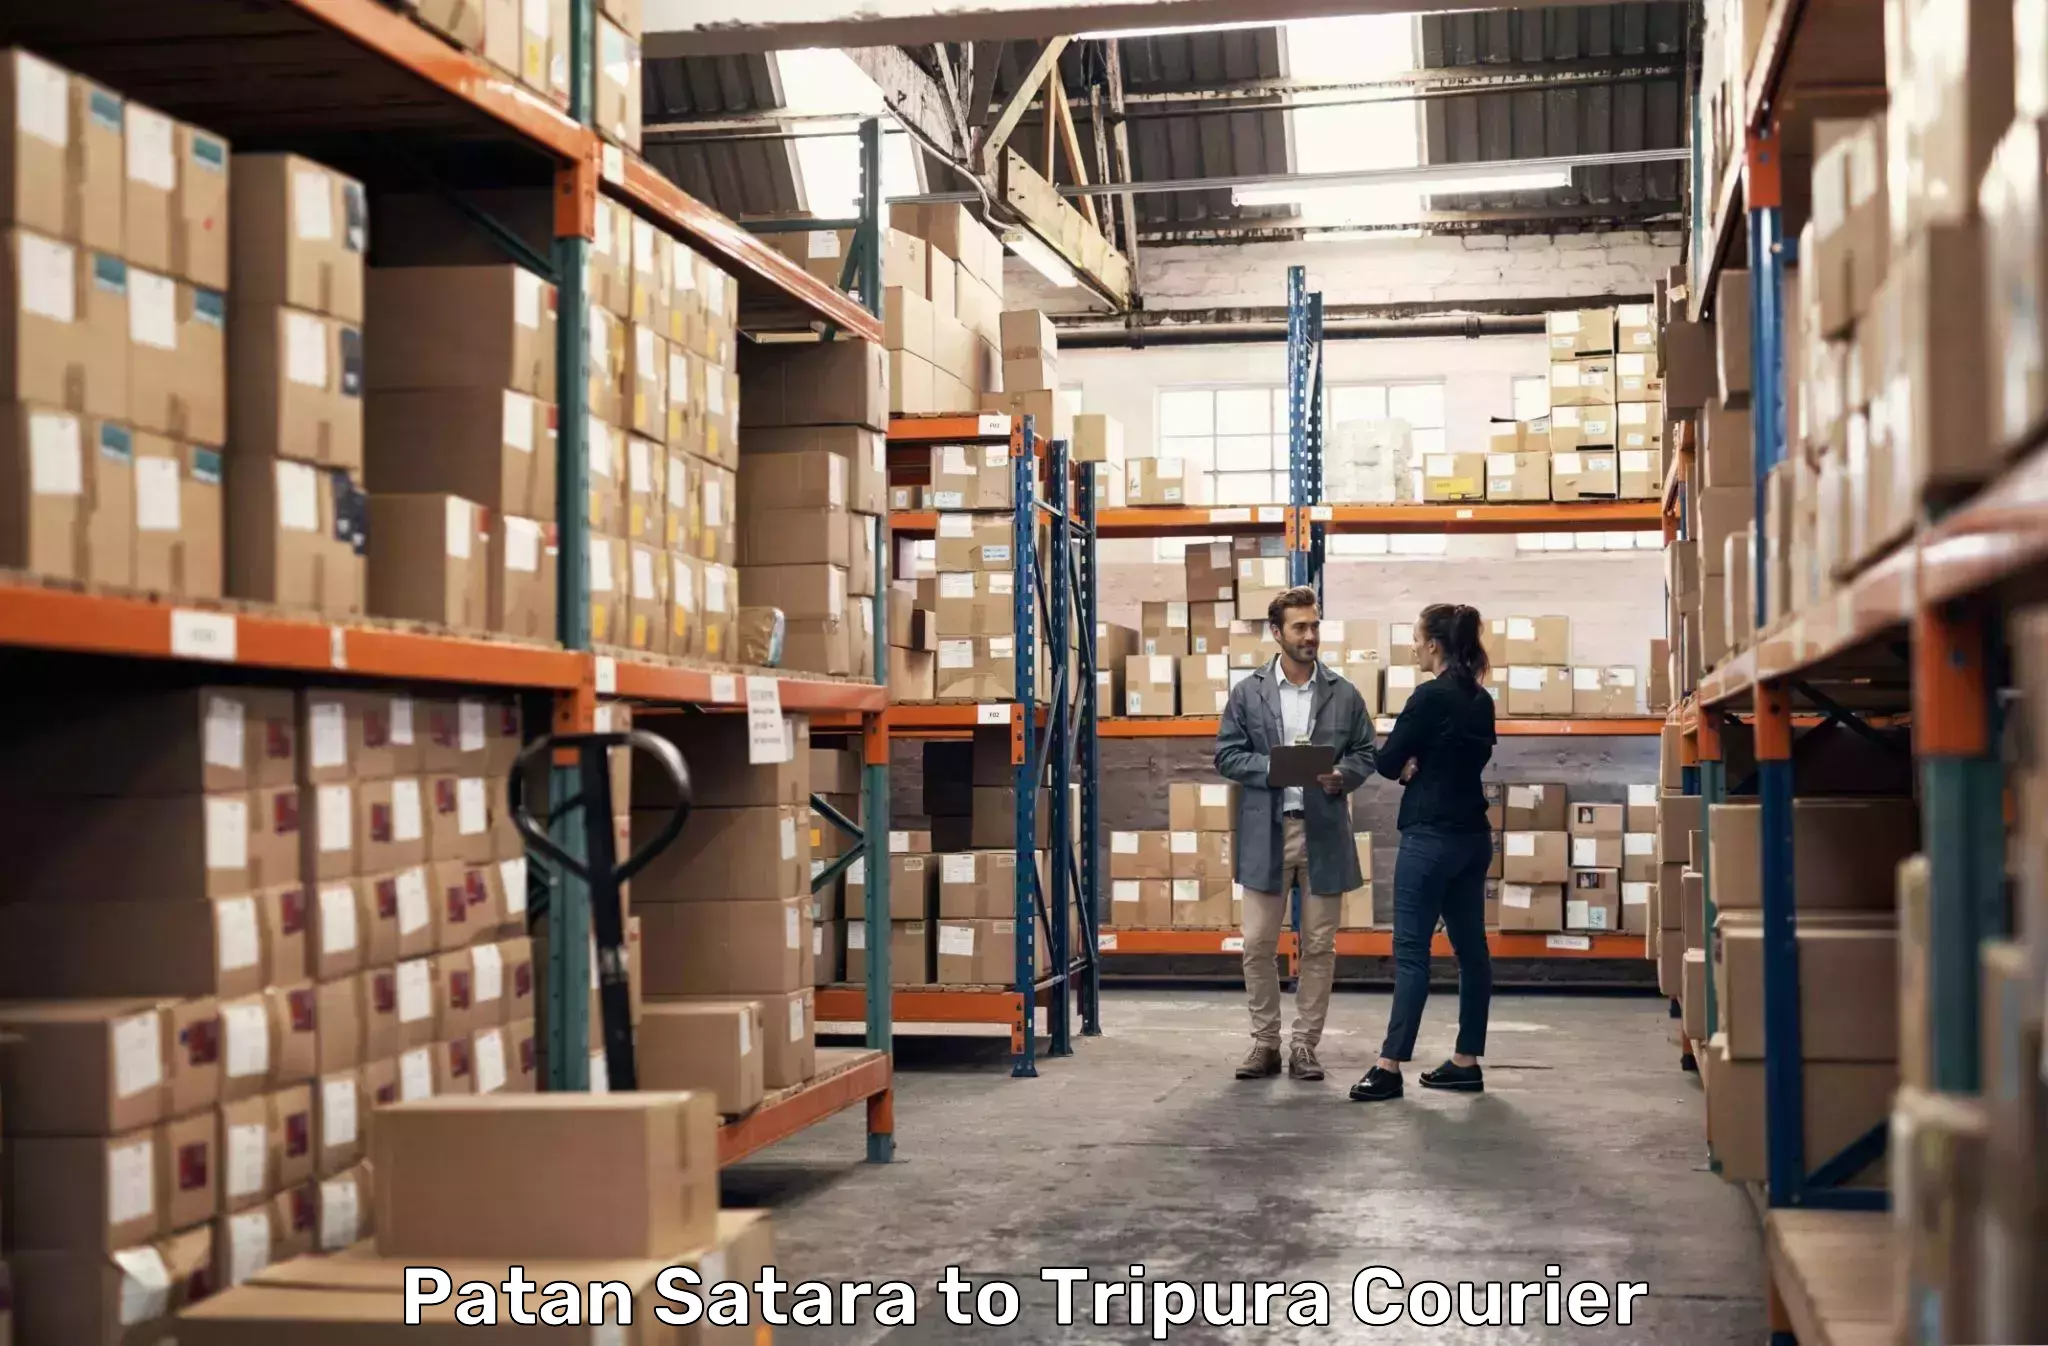 Reliable courier services Patan Satara to IIIT Agartala